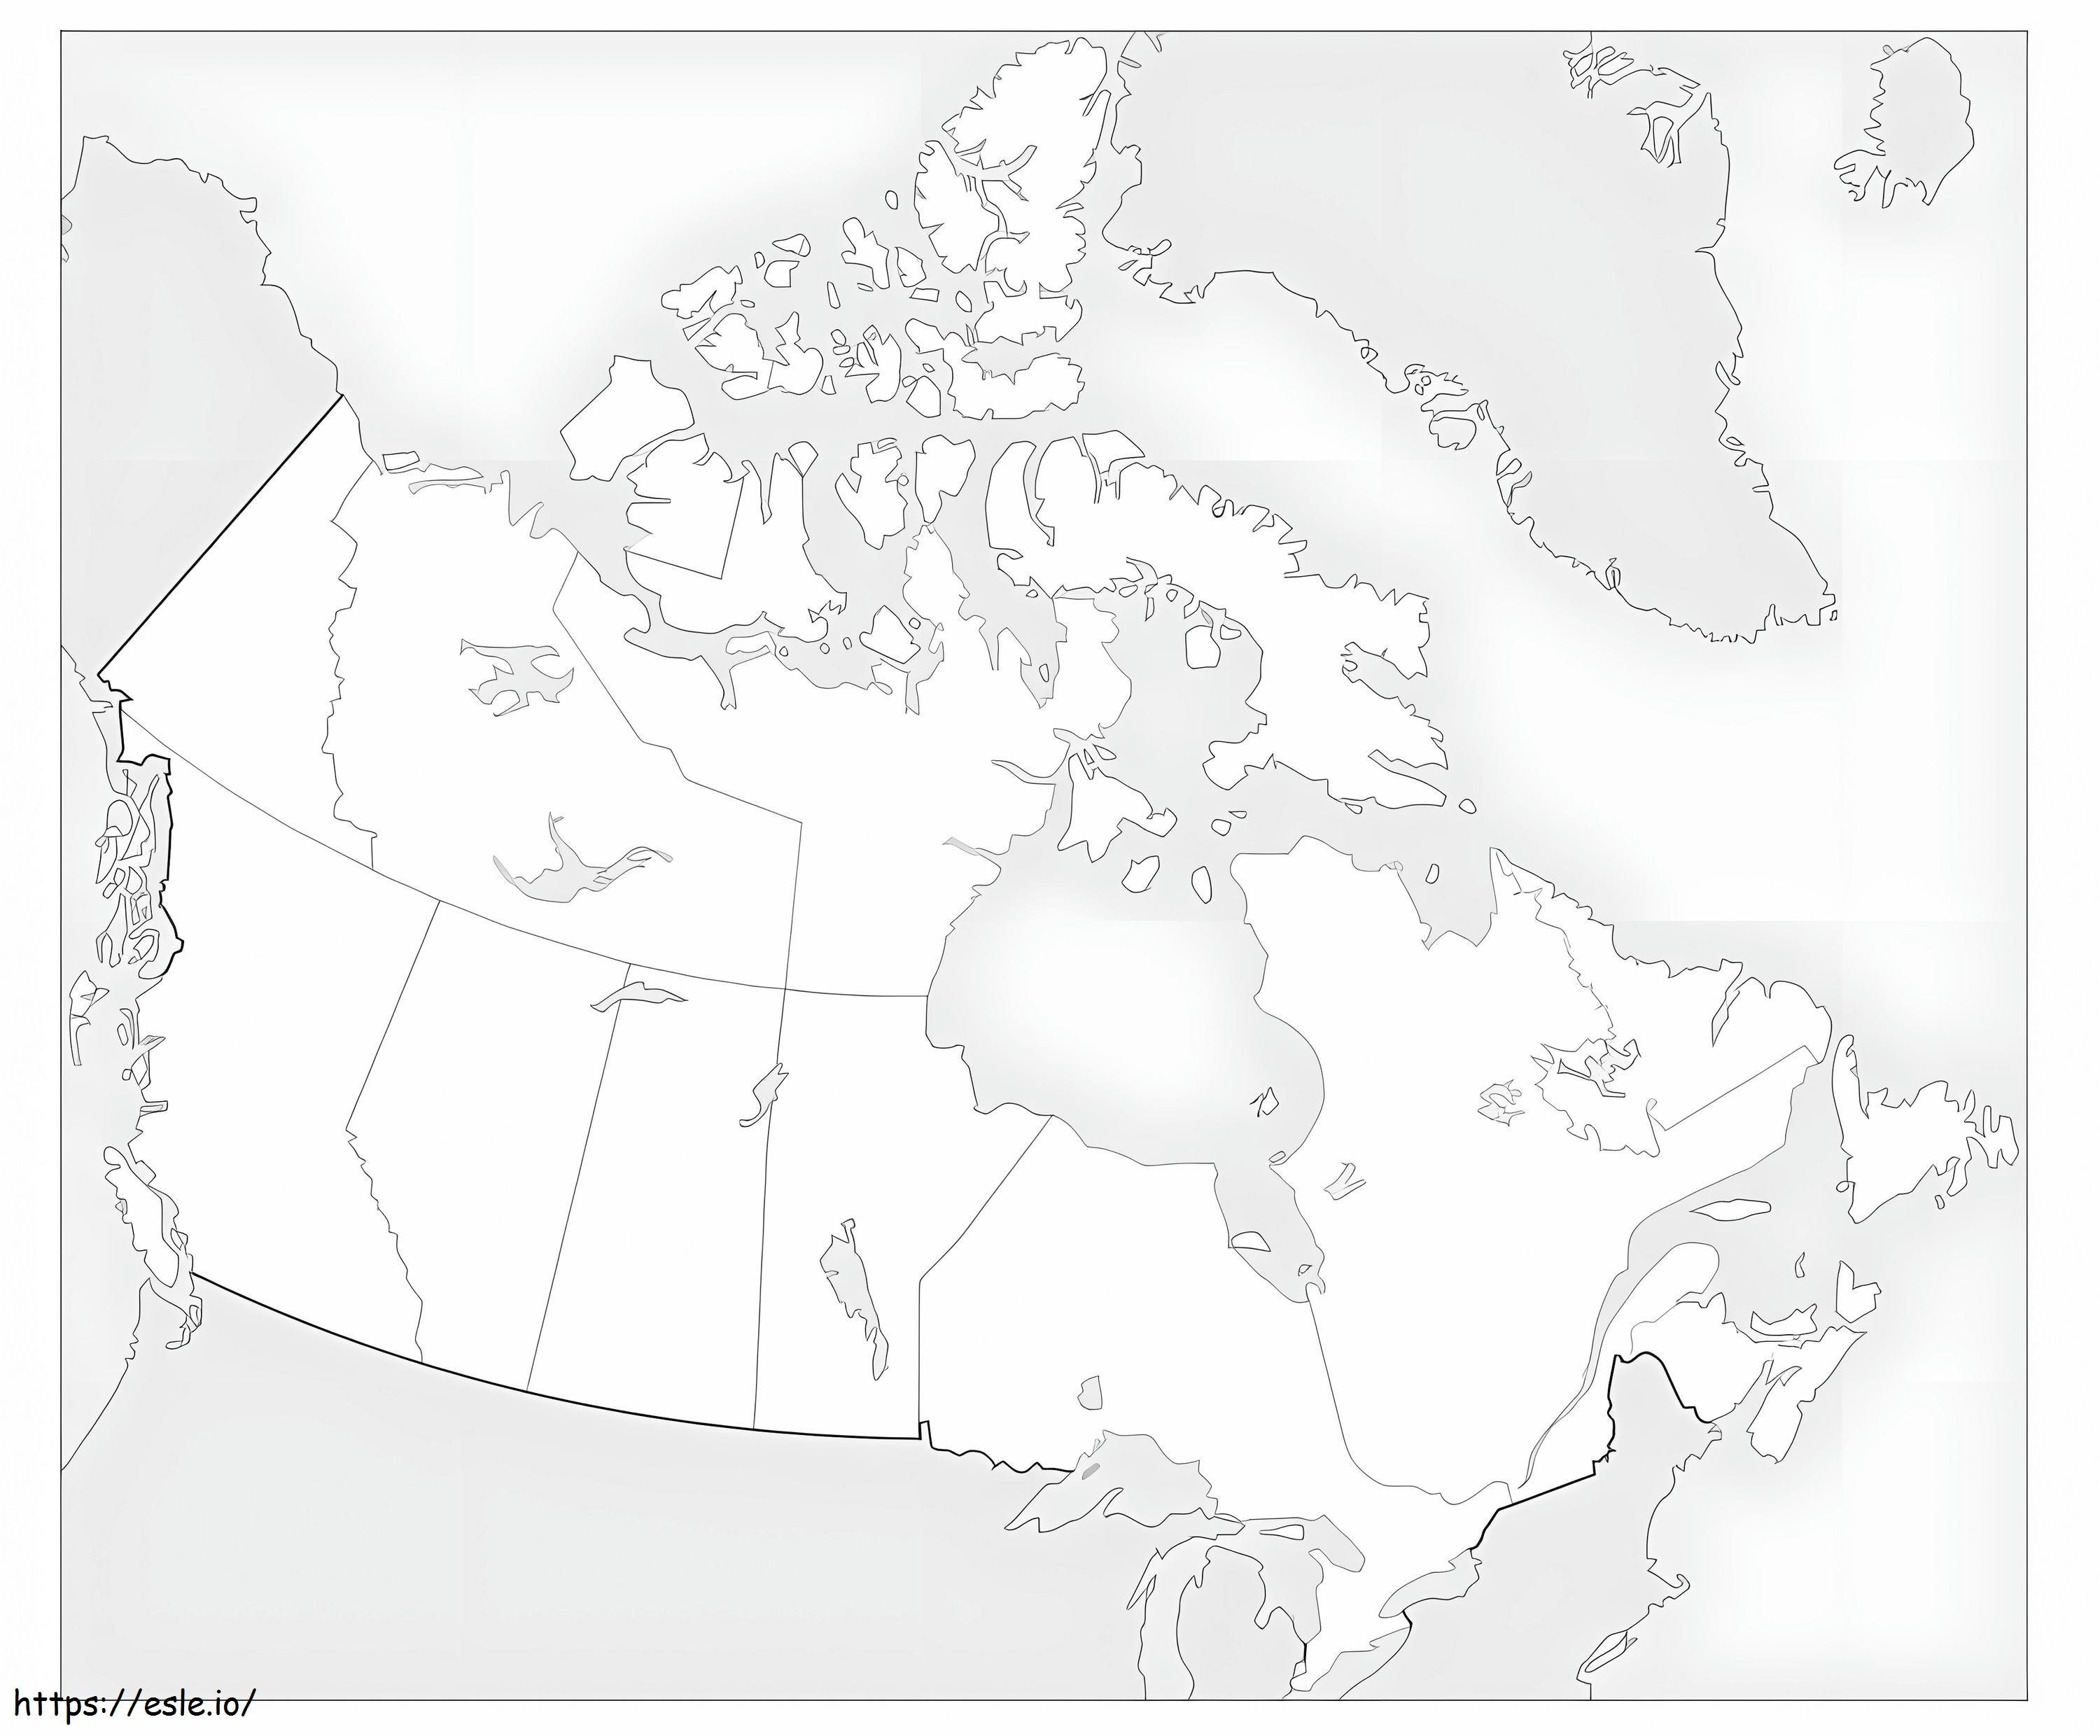 Karte von Kanada ausmalbilder